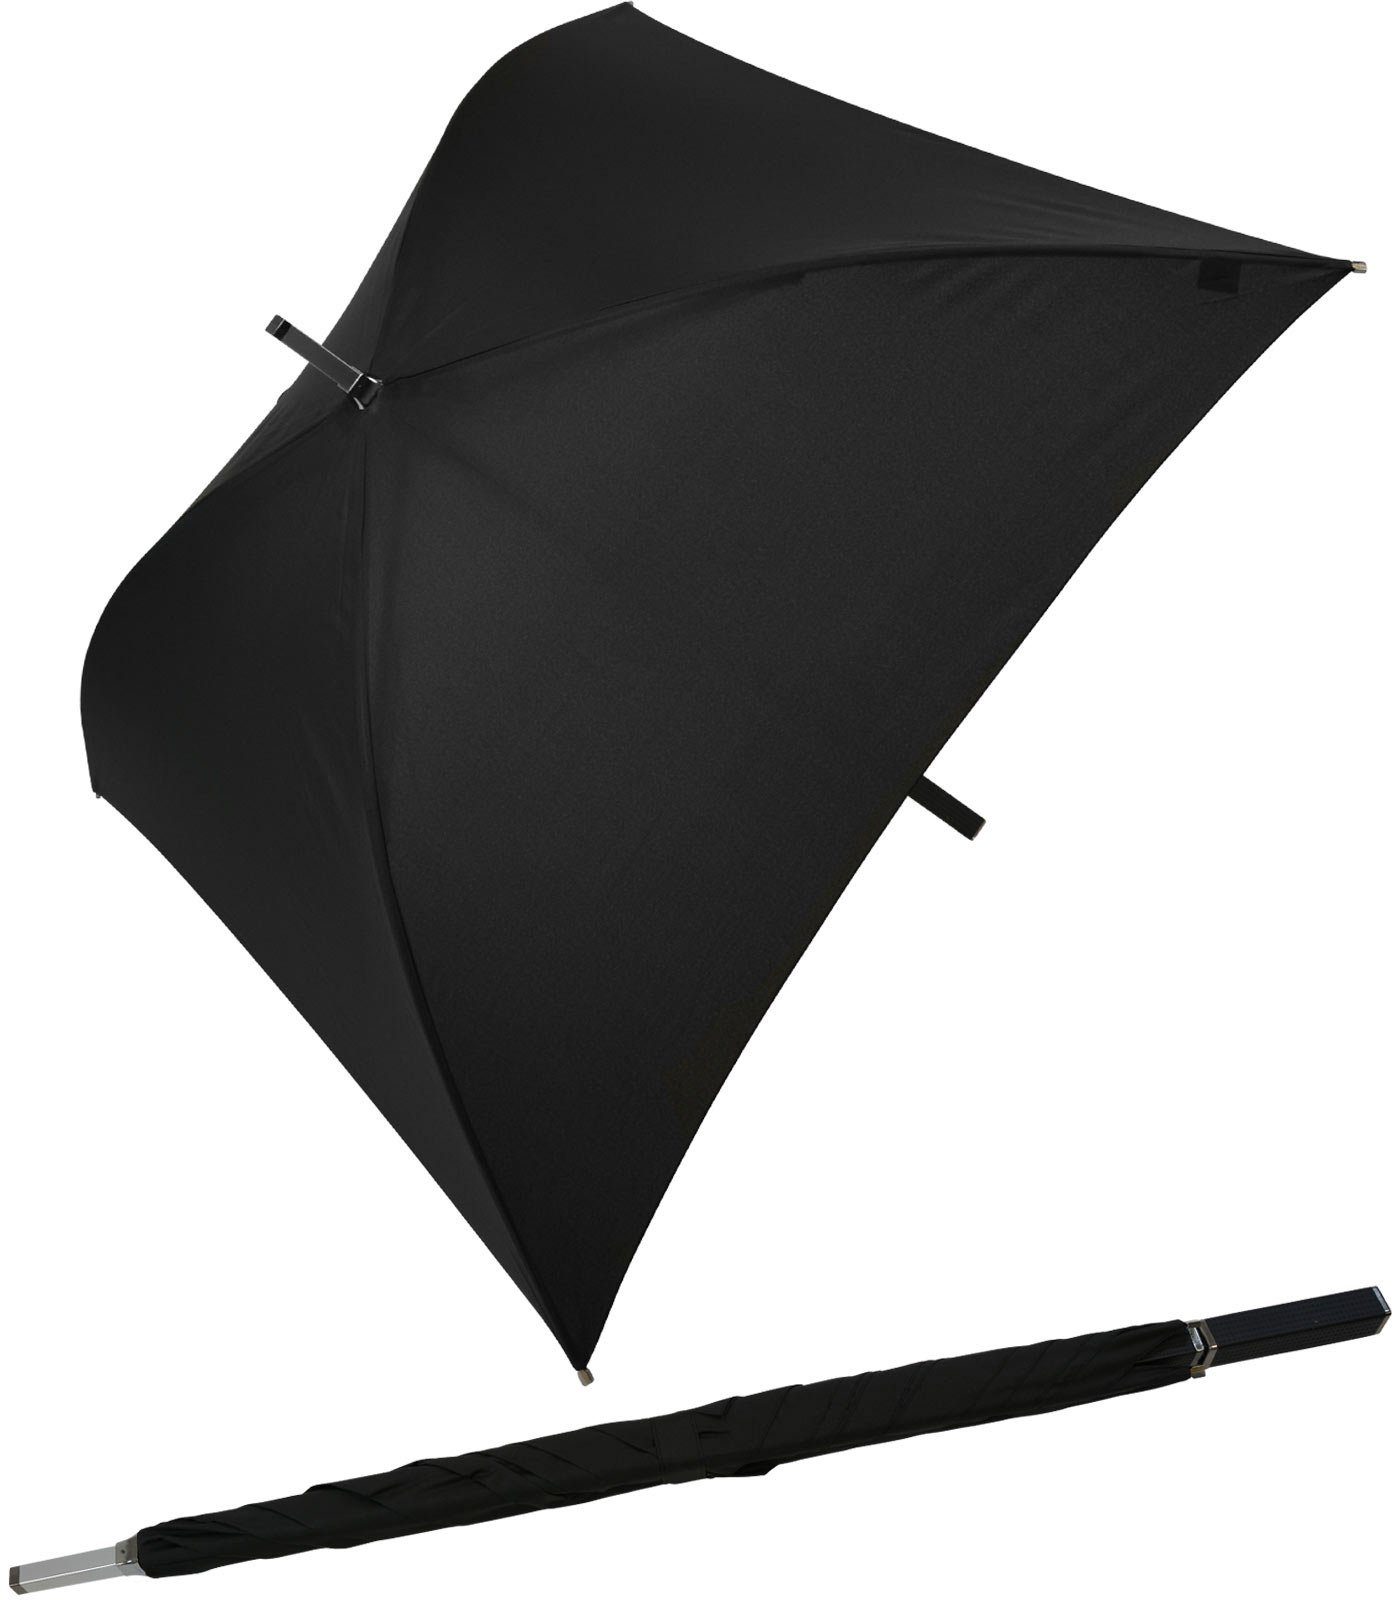 Square® Regenschirm Impliva ganz quadratischer Regenschirm, Langregenschirm schwarz voll der All besondere